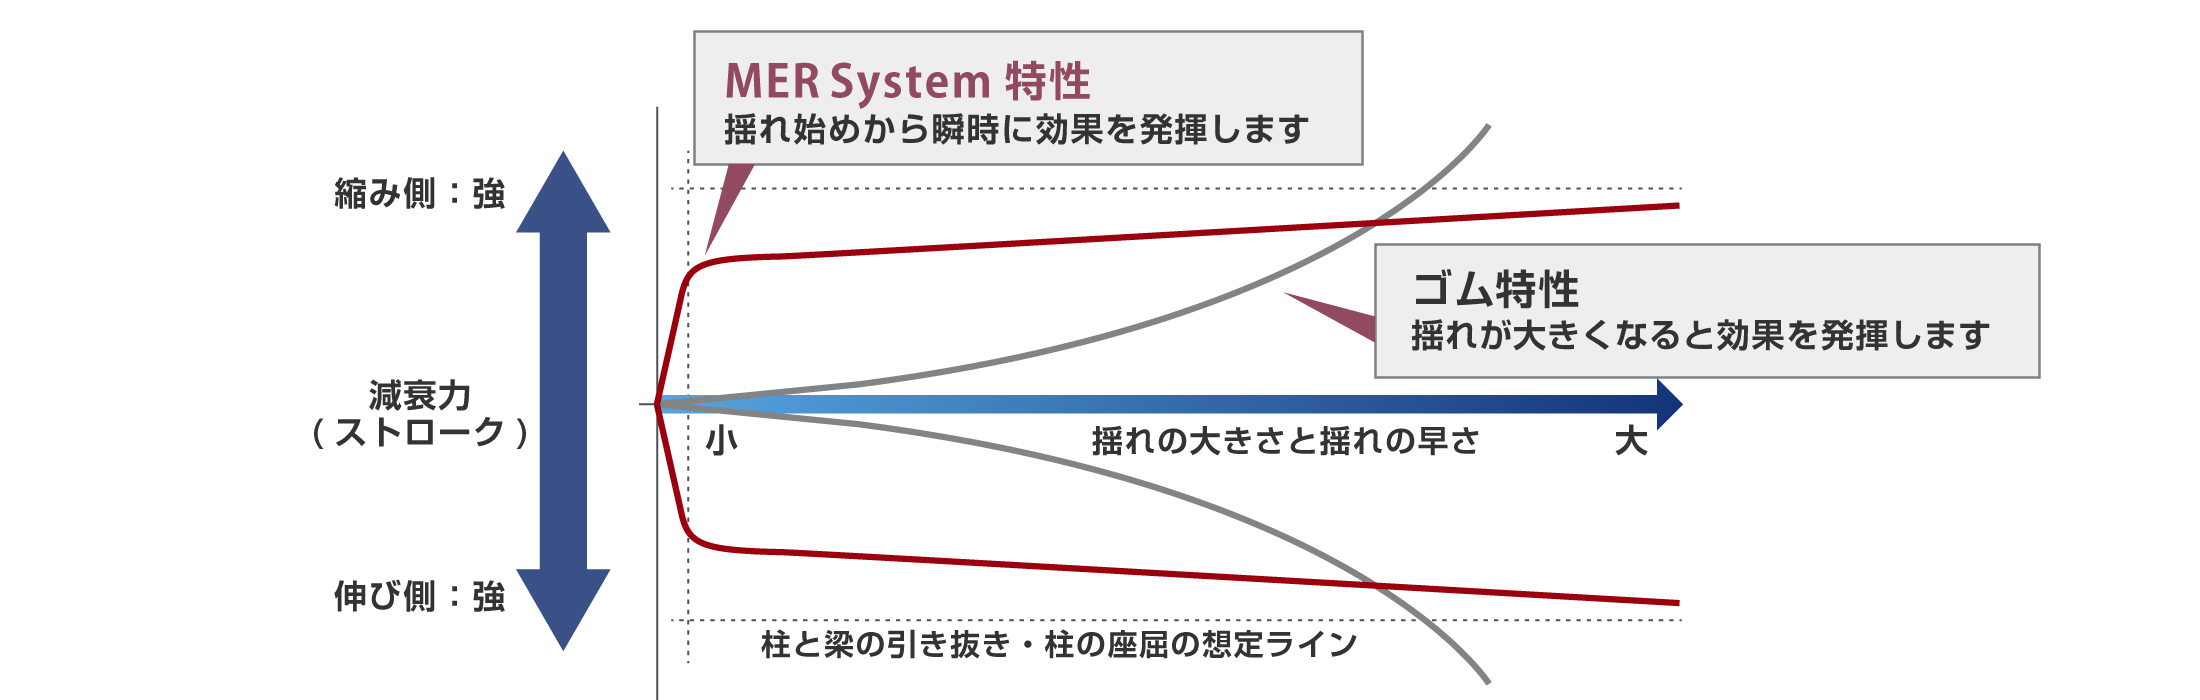 制震装置 MER System特性